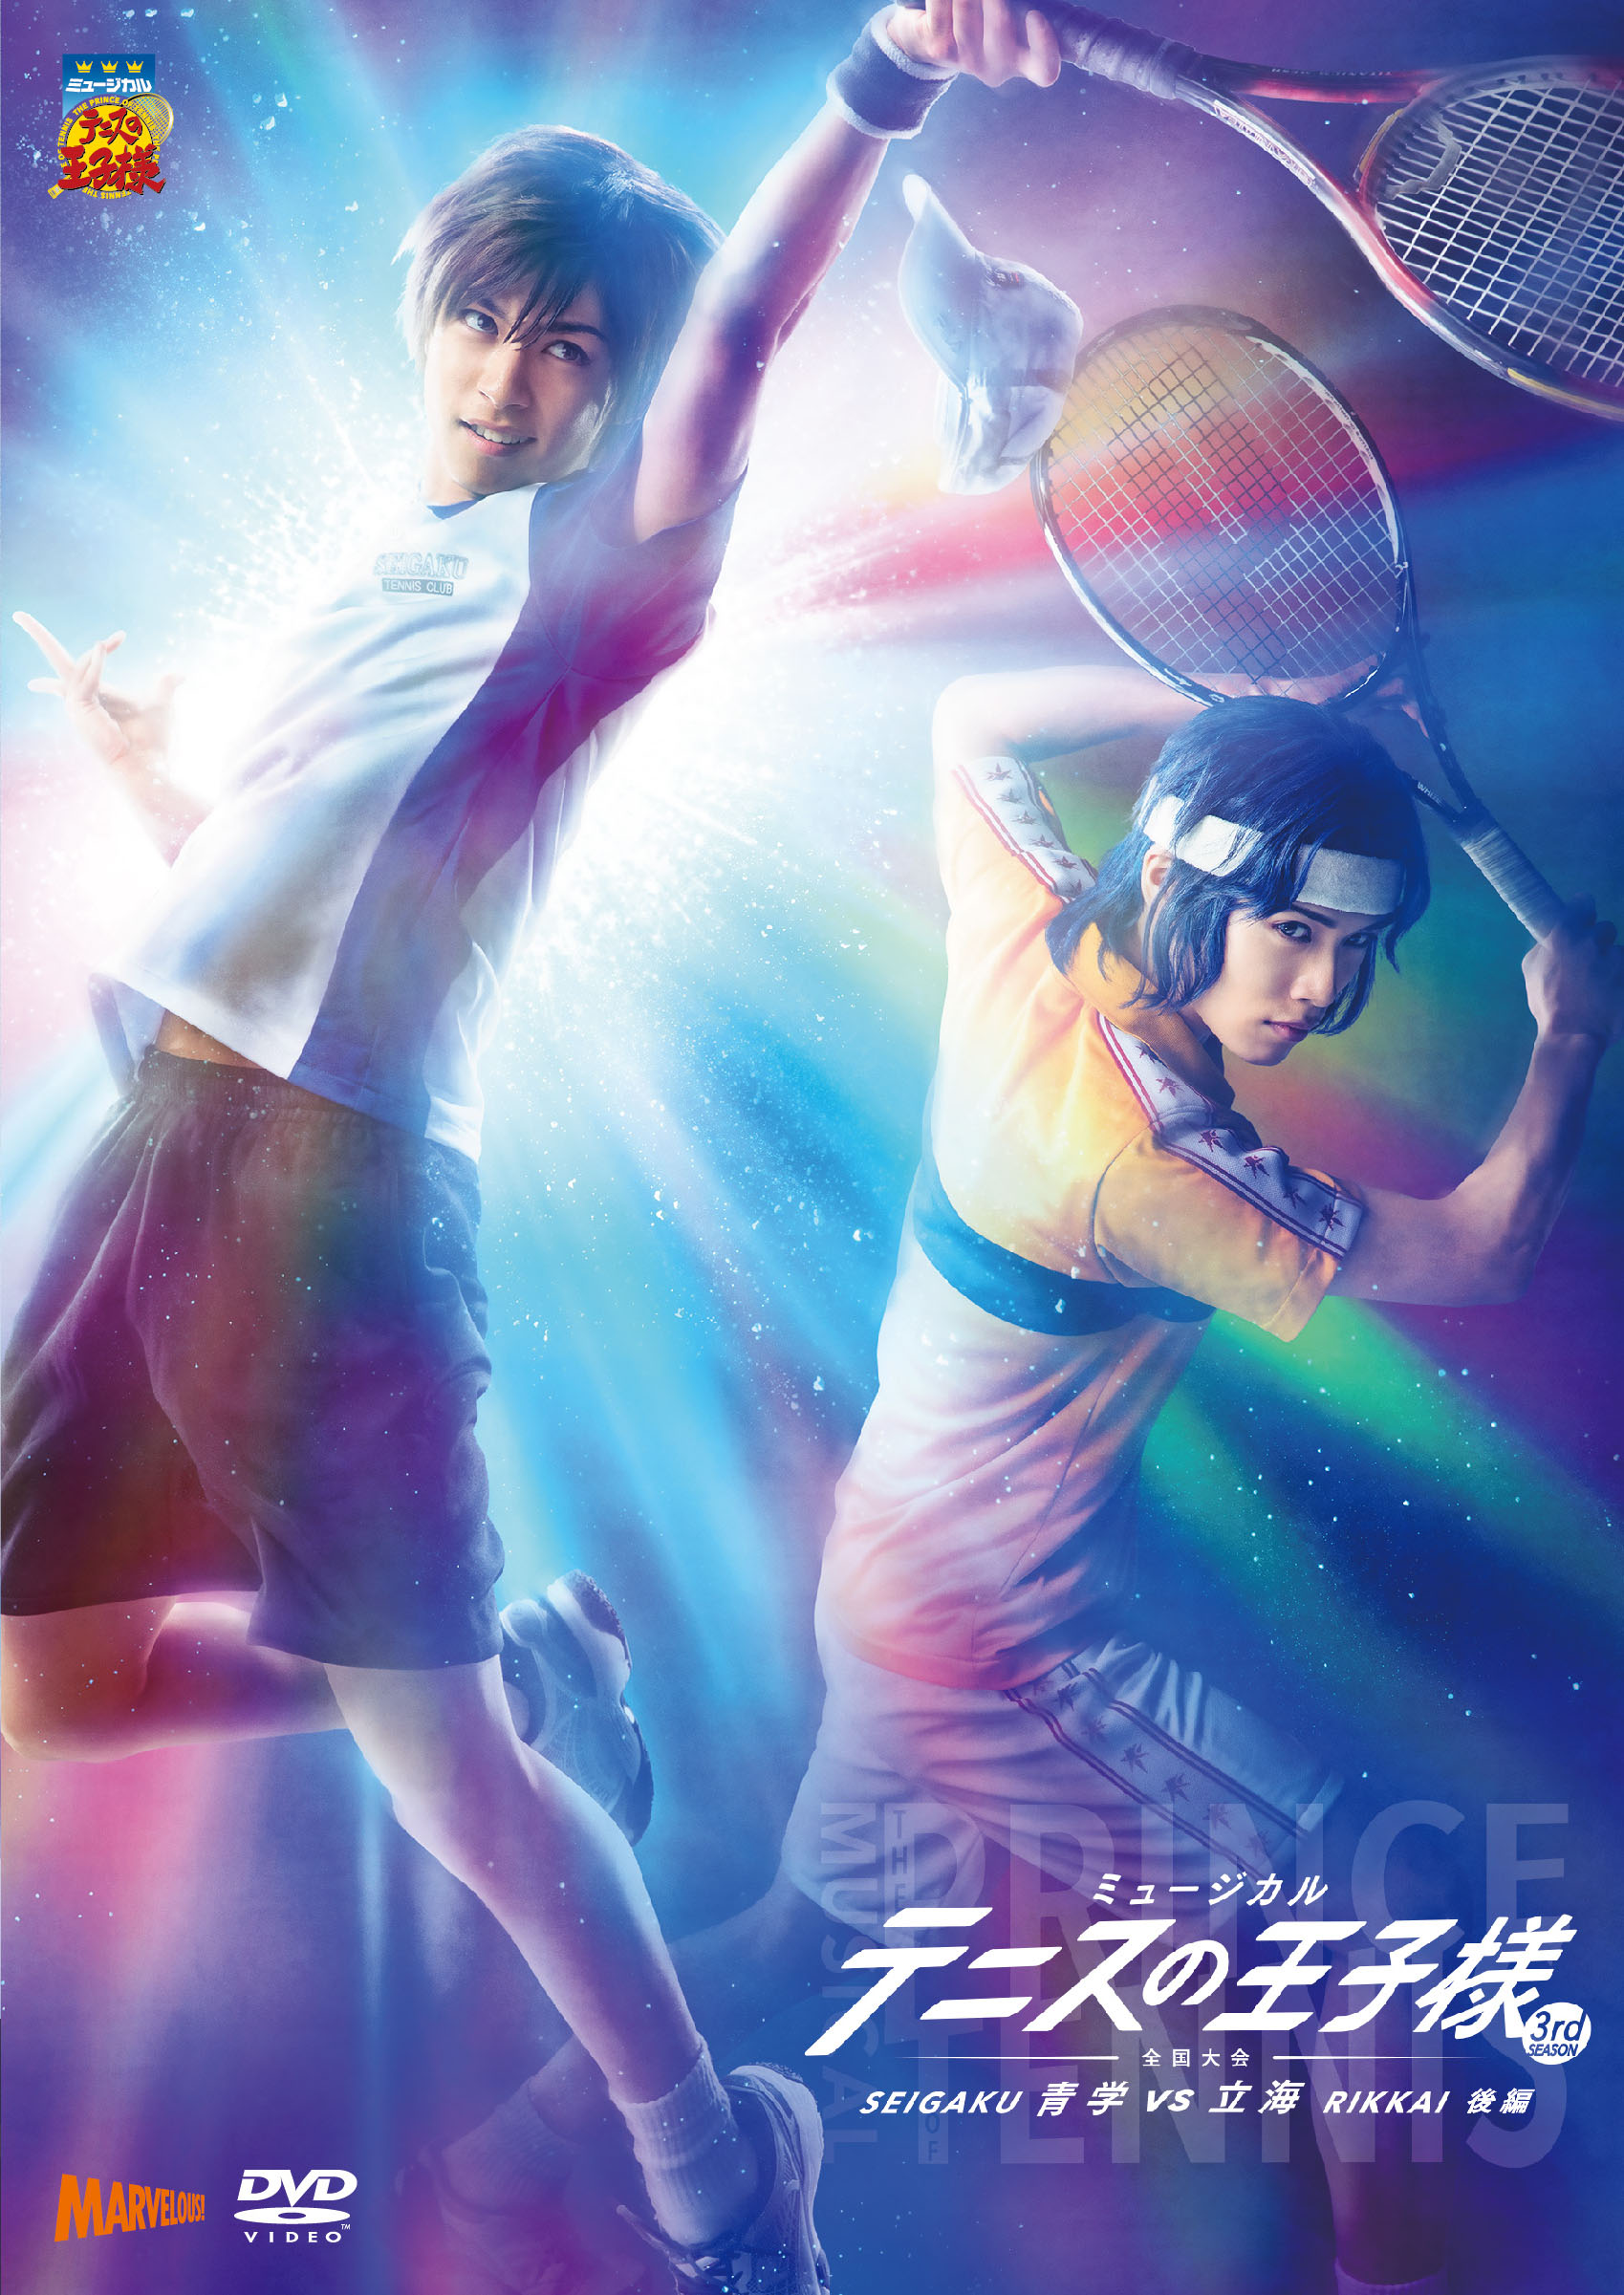 ディスコグラフィー 2ndシーズン | ミュージカル『テニスの王子様』『新テニスの王子様』公式サイト